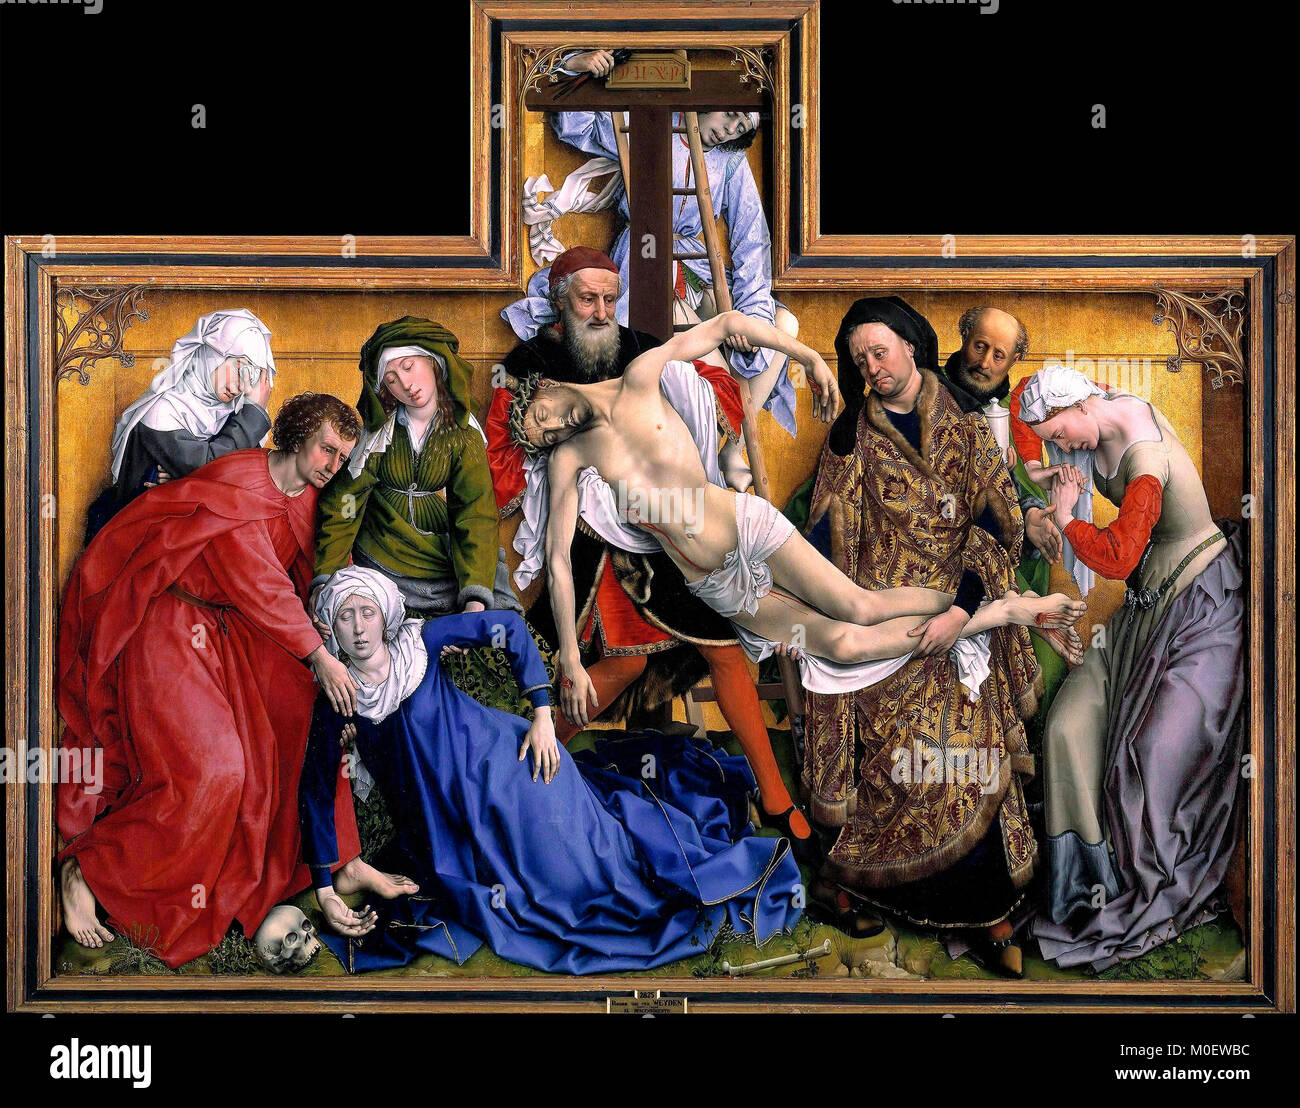 The Deposition of Jesus Christ - Rogier van der Weyden - circa 1435 Stock Photo